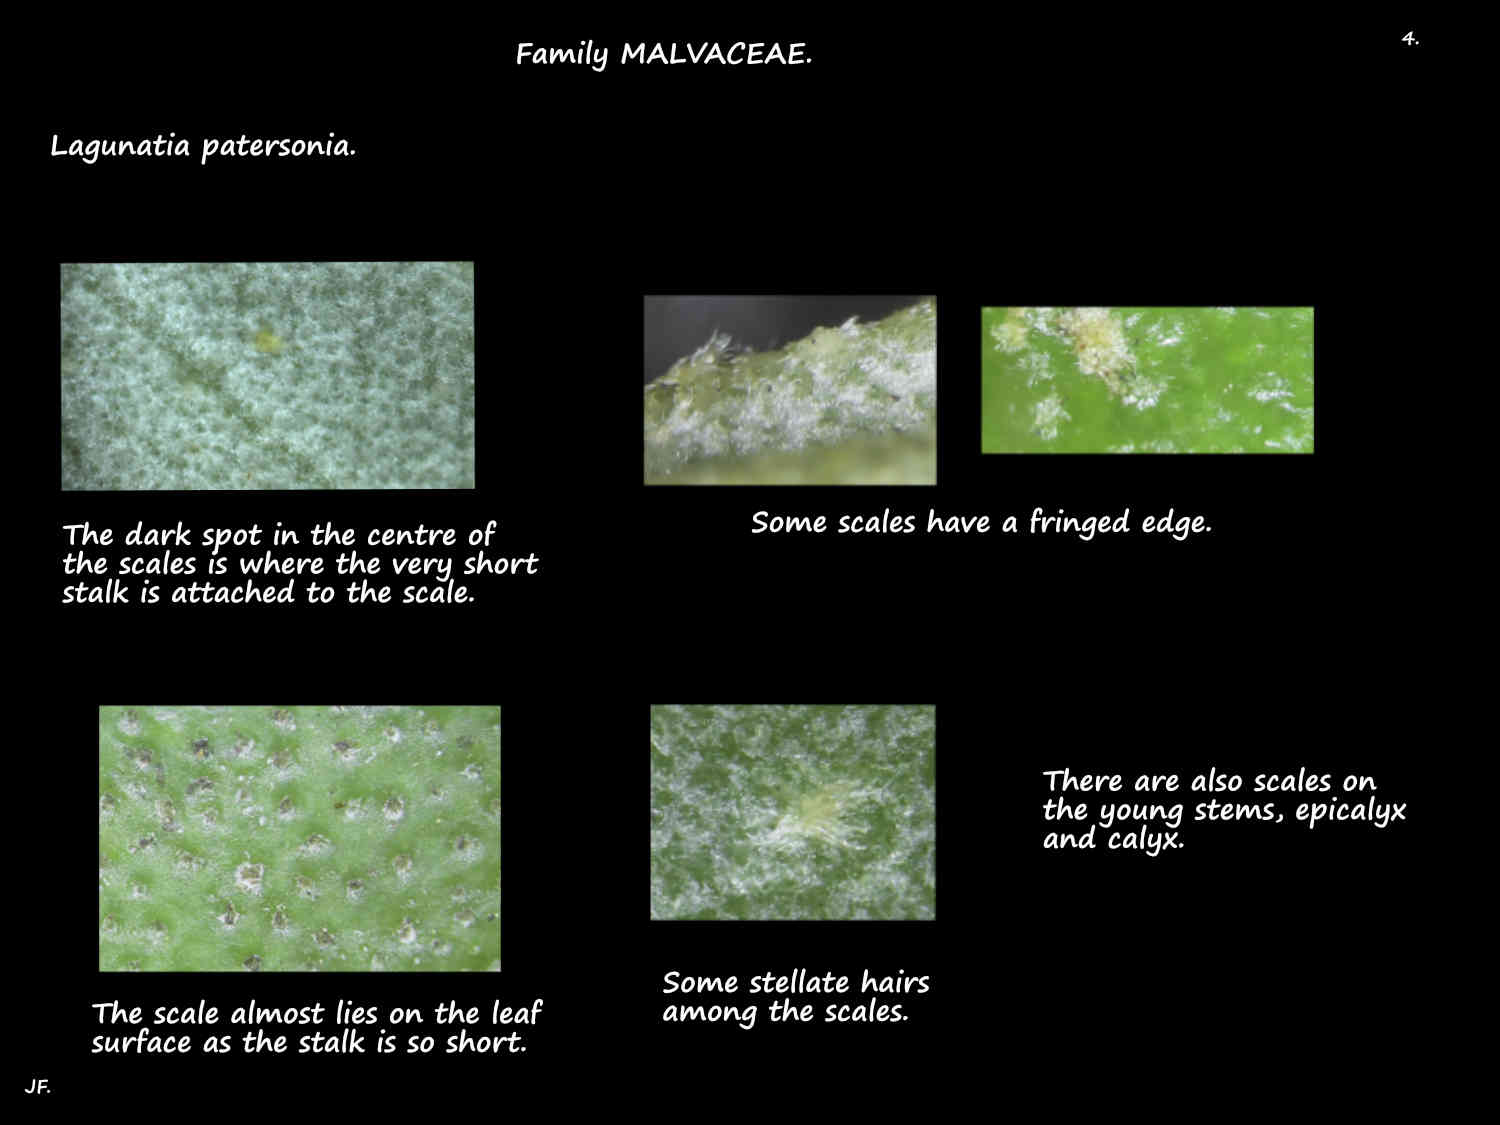 4 Lagunaria patersonia scales